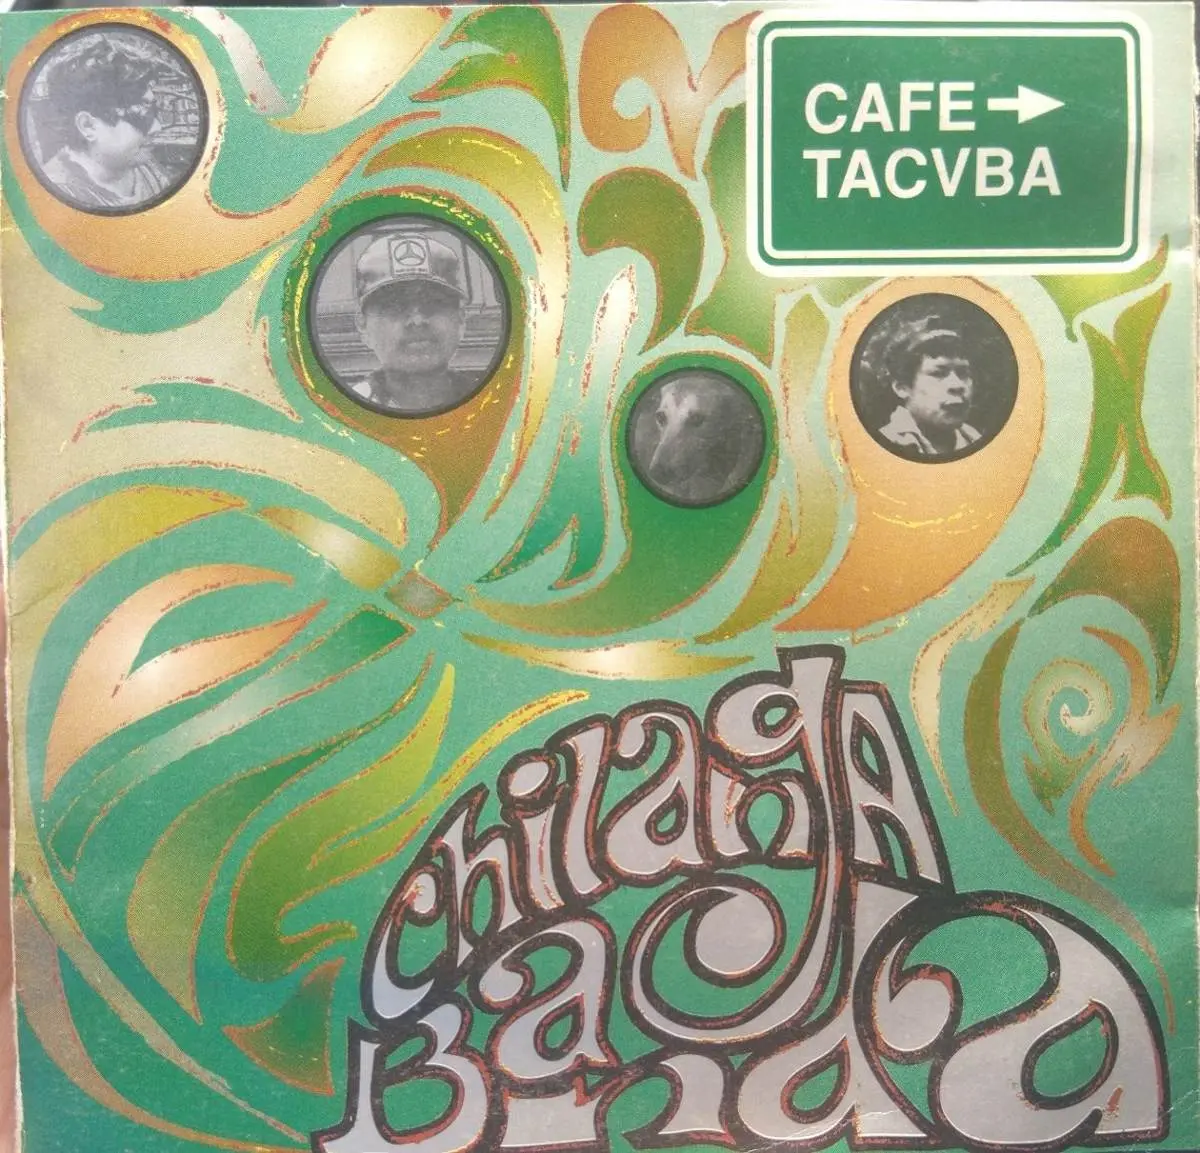 chilanga banda de café tacuba - Qué significa en chifla pasa la Pachá